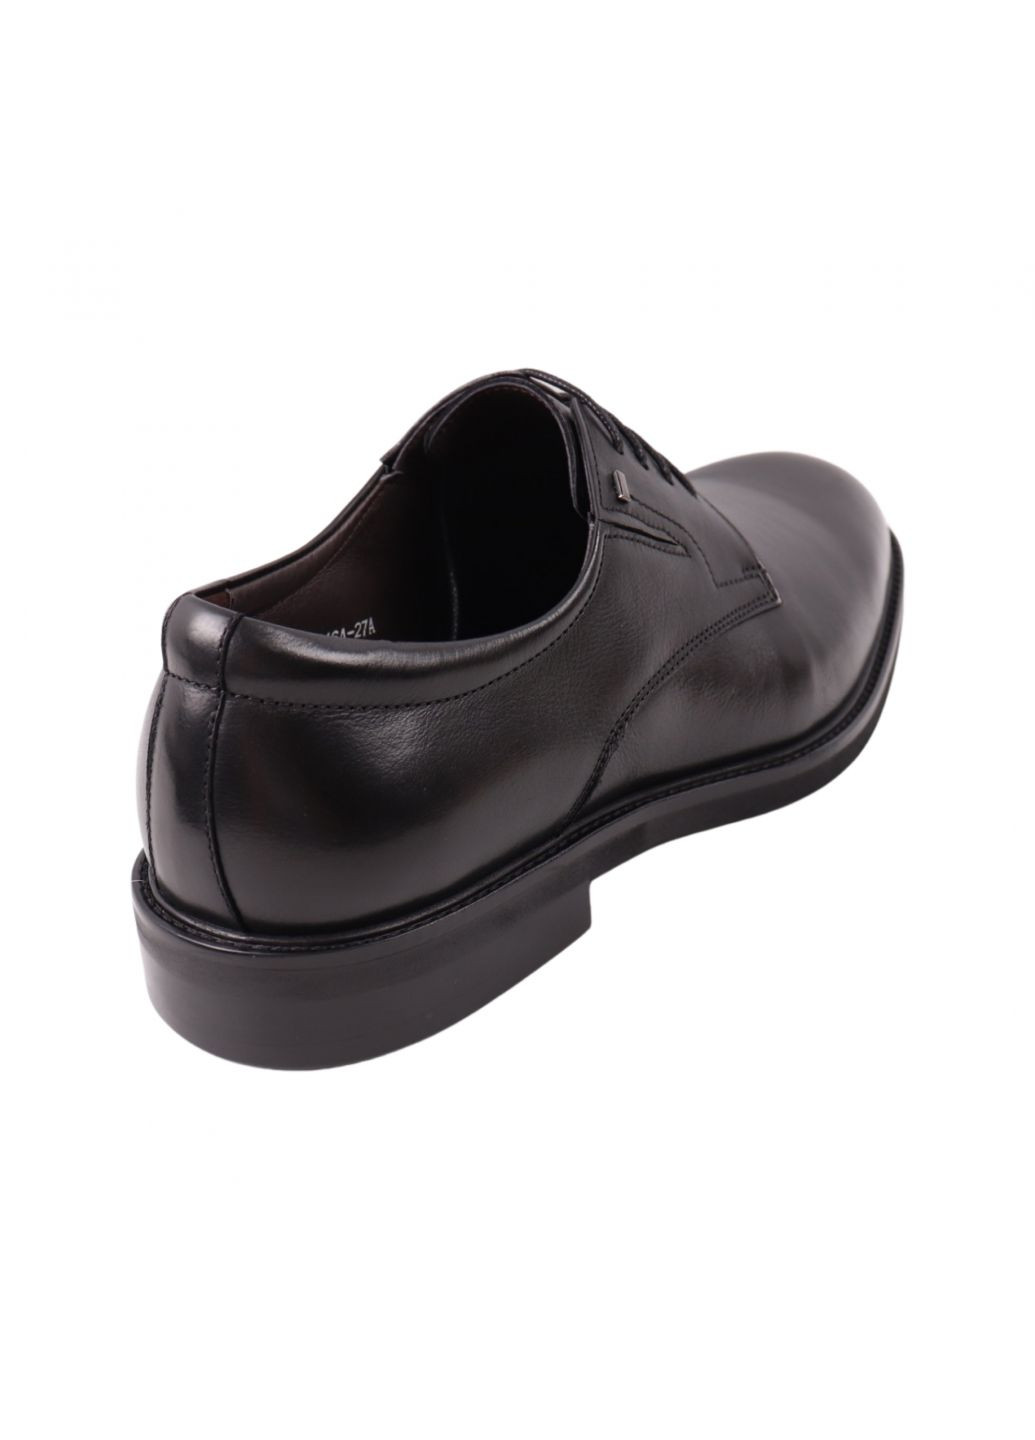 Туфлі чоловічі Lido Marinozi чорні натуральна шкіра Lido Marinozzi 314-23dt (263945270)